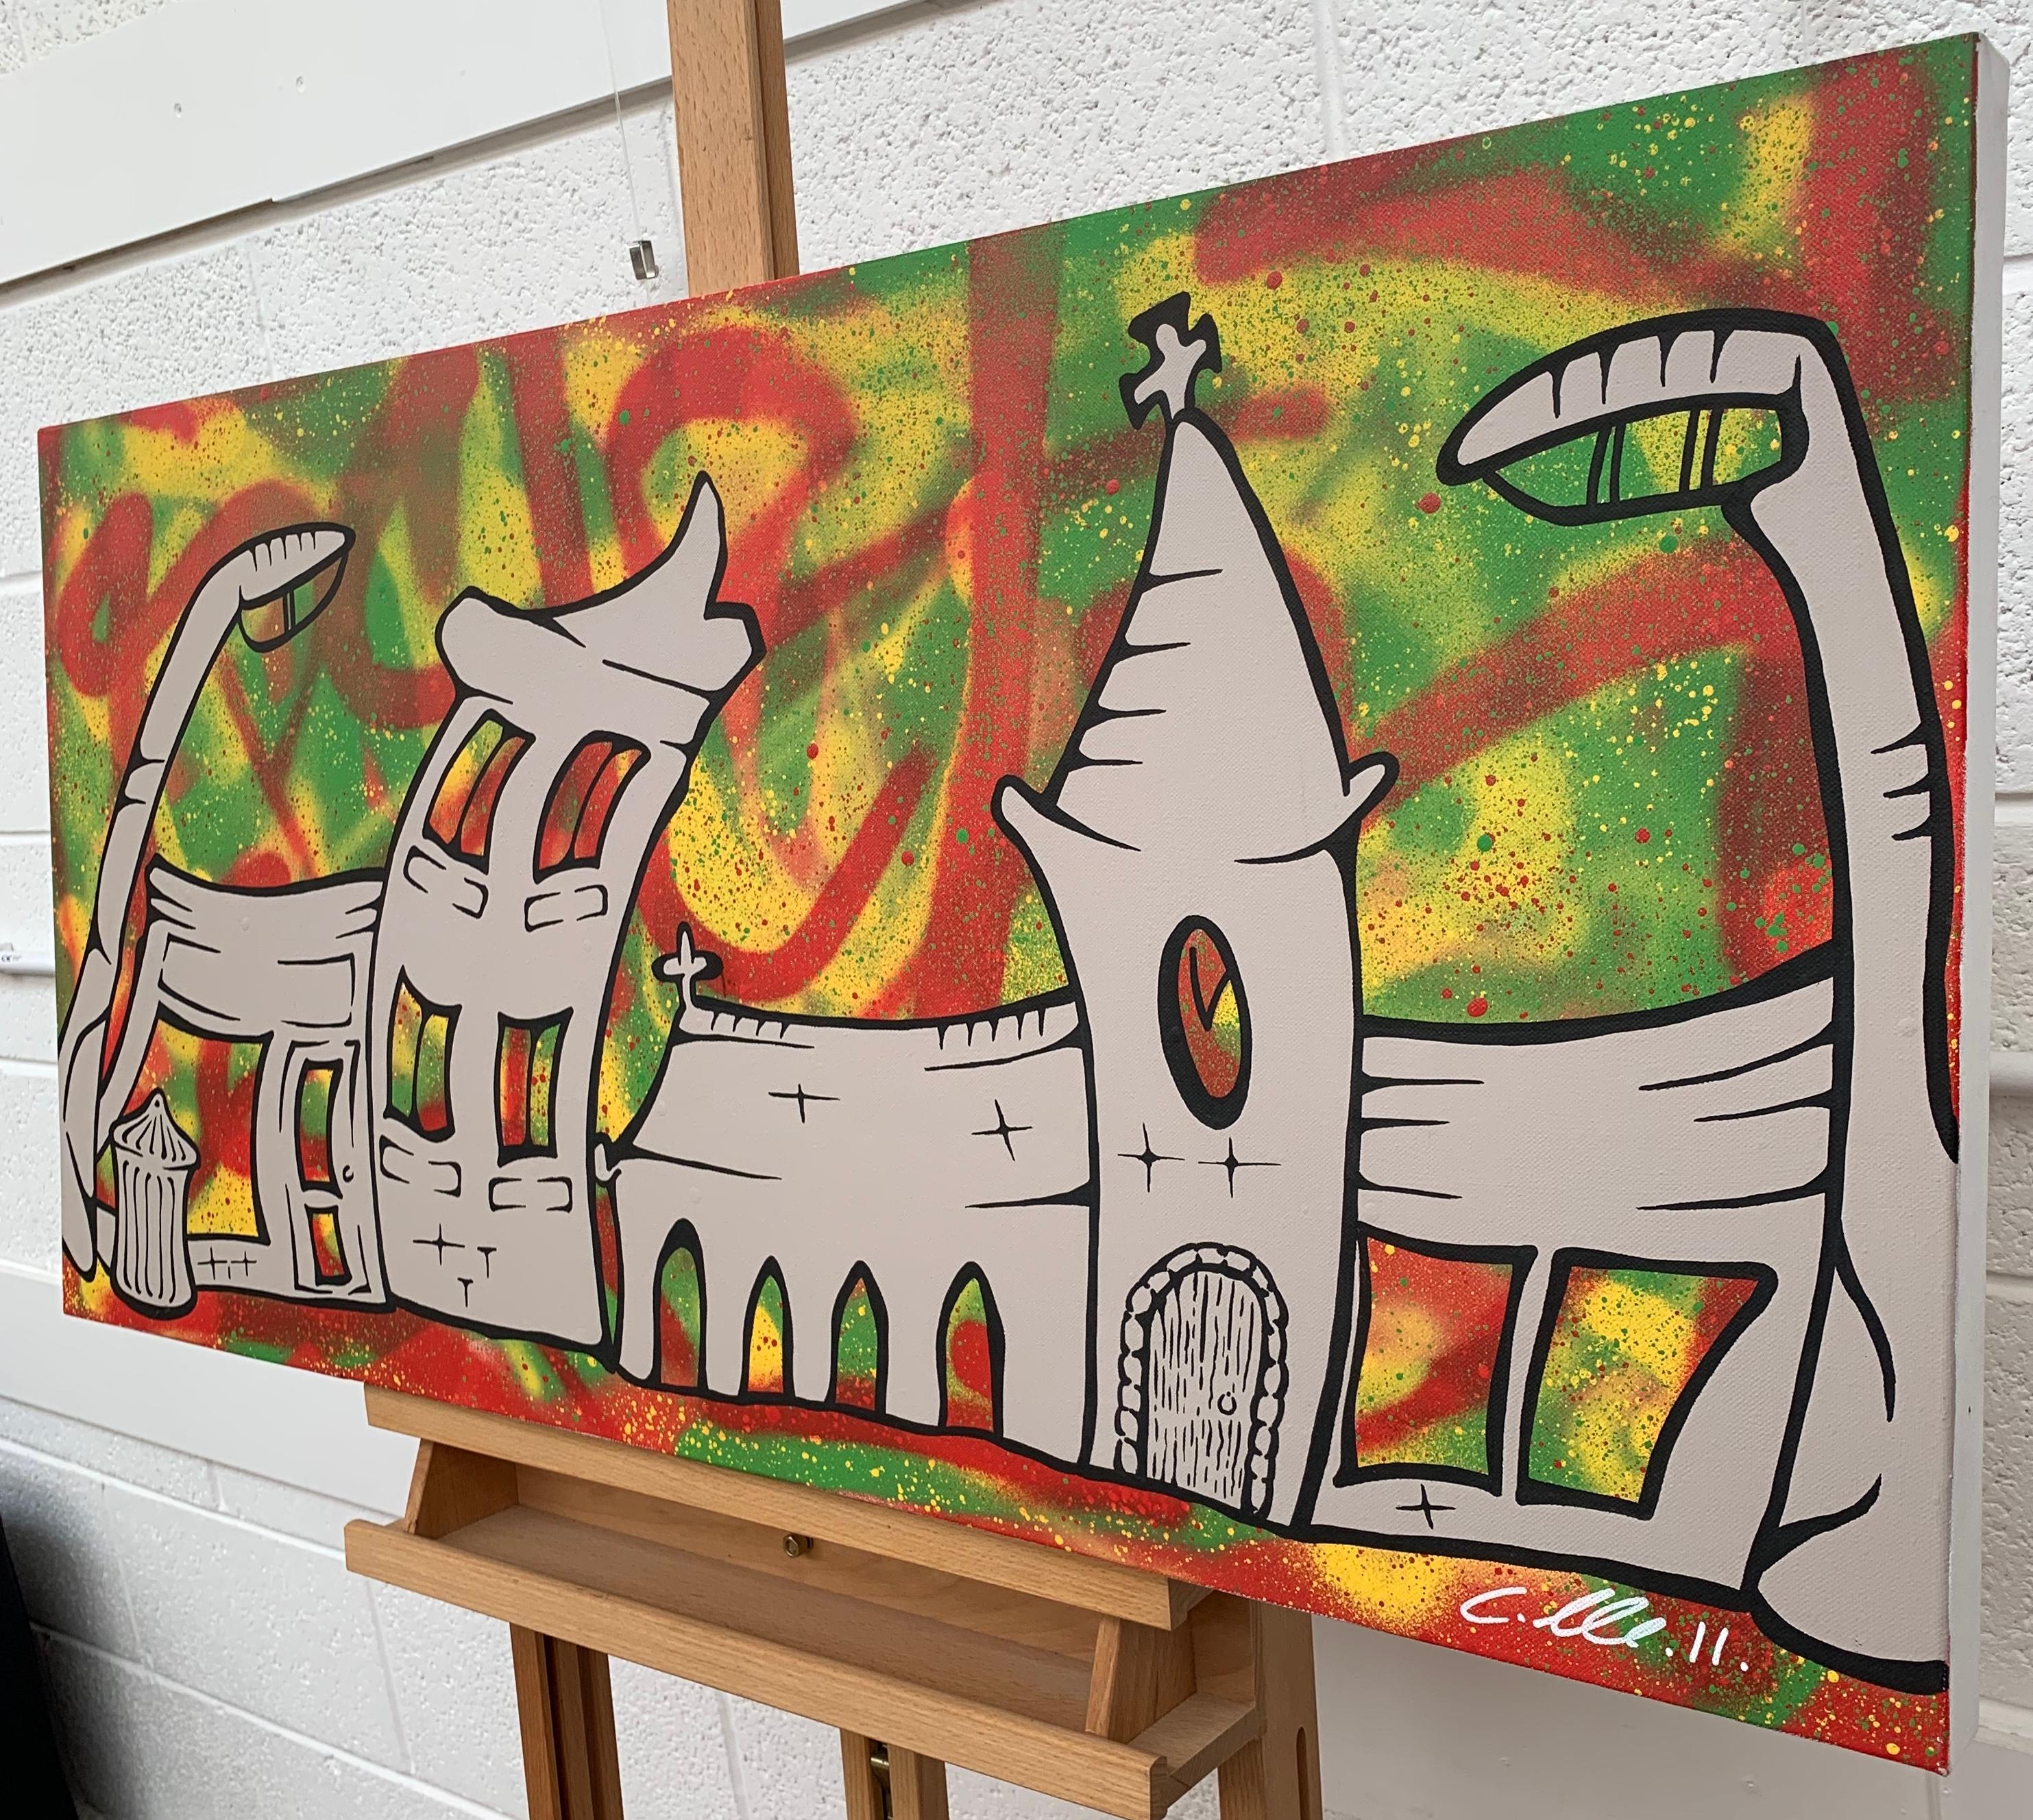  Rue argentée avec fond abstrait Pop Art par l'artiste britannique de graffiti urbain, Chris Pegg. Chris Pegg est un artiste de rue autodidacte qui produit des œuvres à forte connotation sociale.  Son travail s'inspire d'artistes tels que Mr